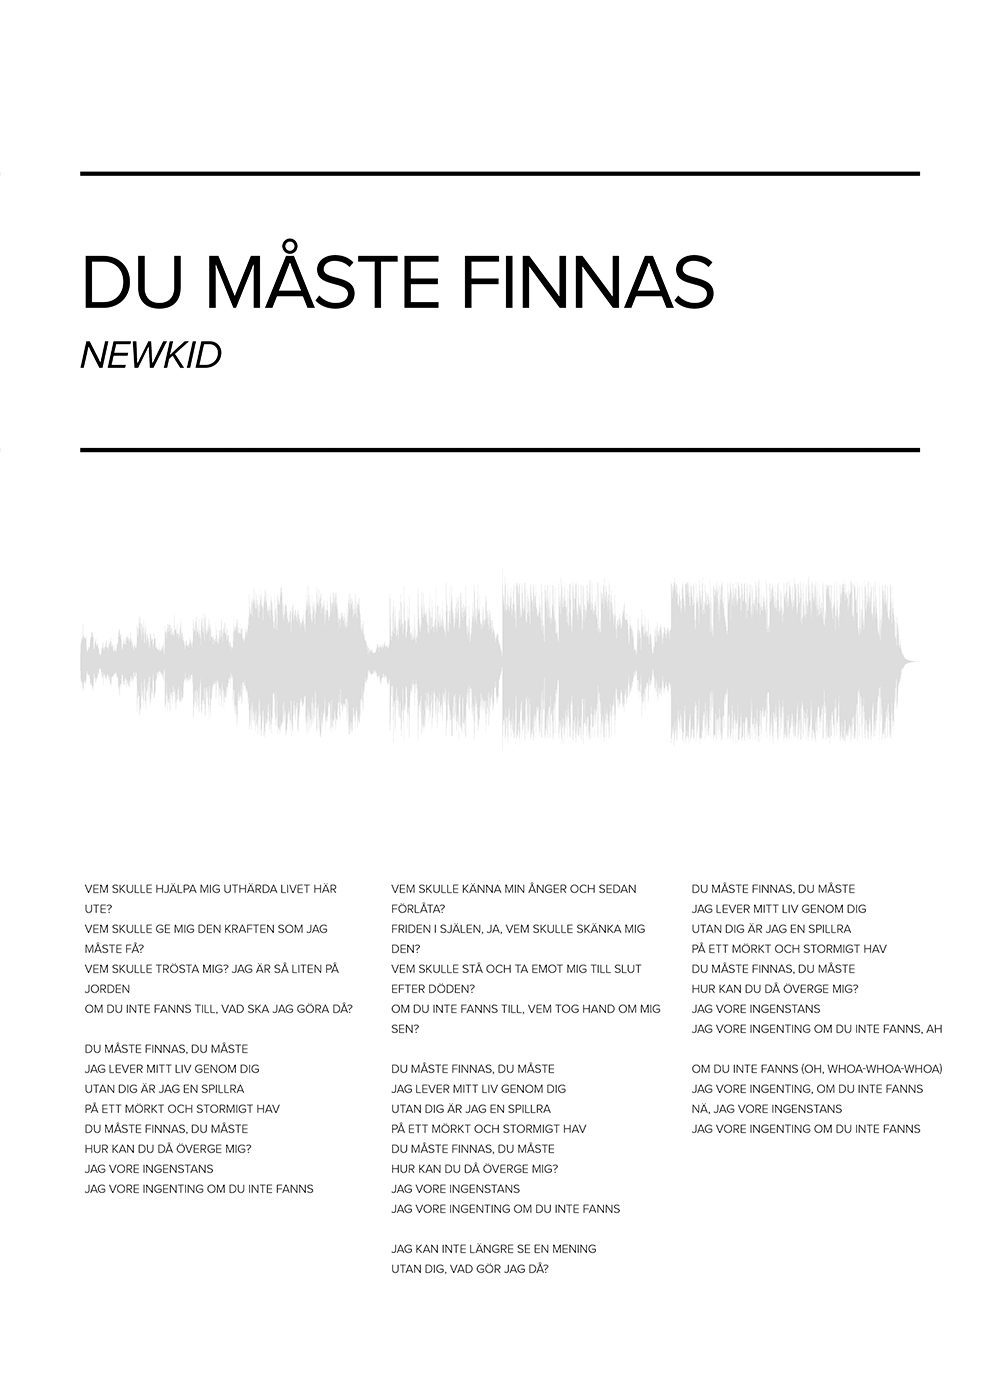 Newkid - Du maste finnas poster